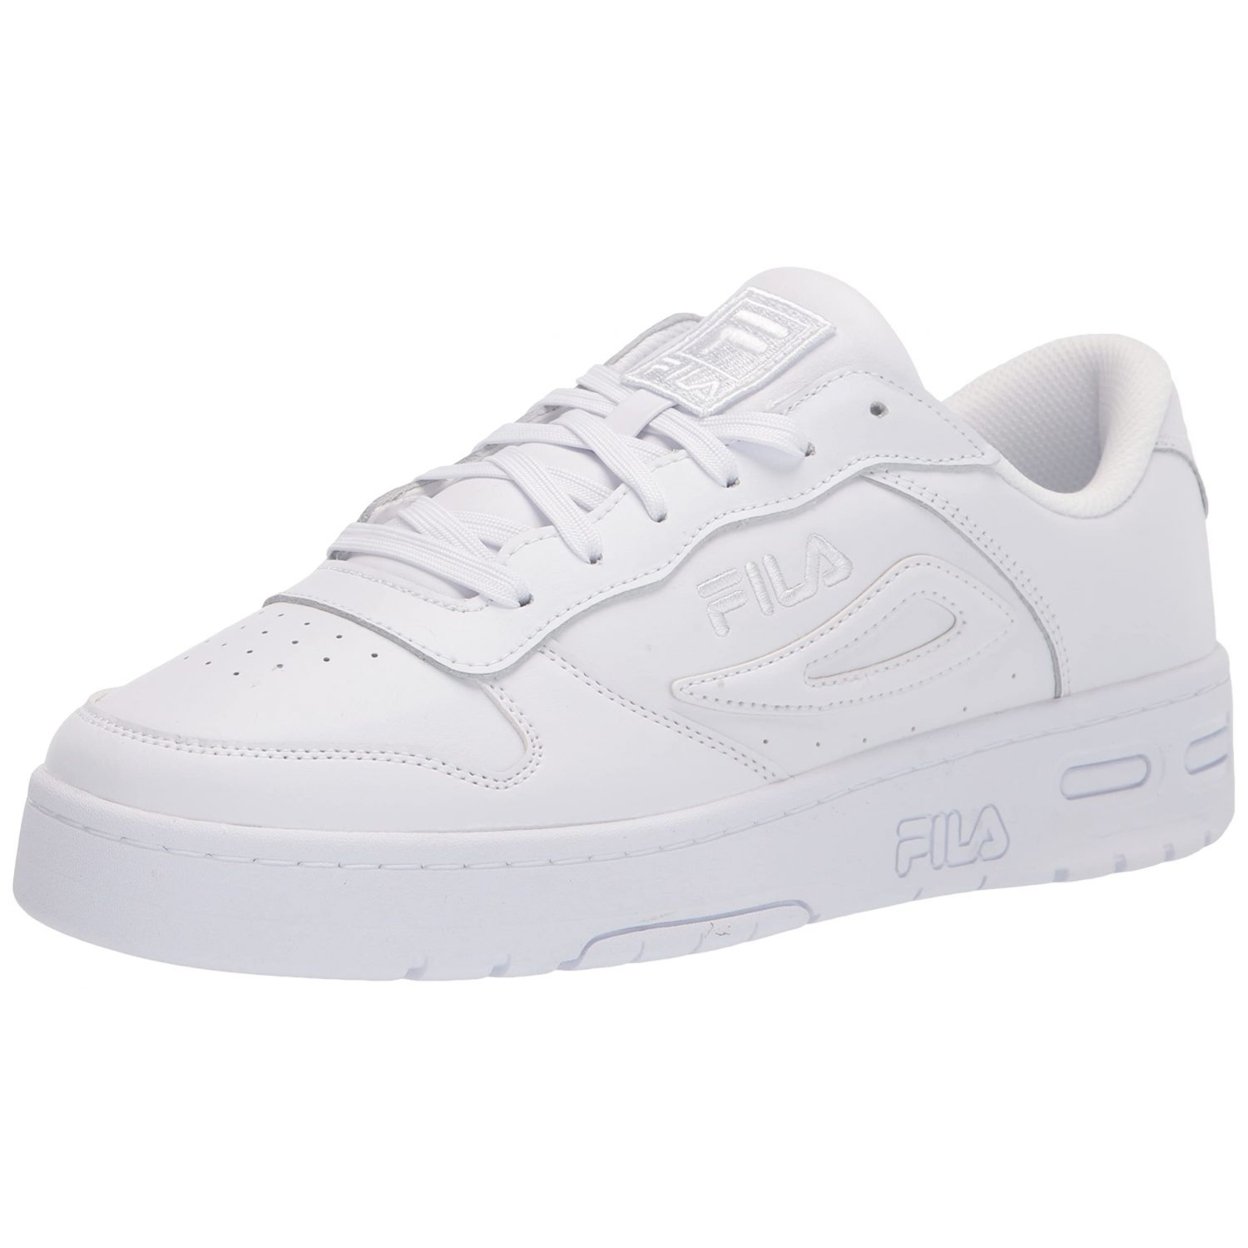 Fila Men's Lnx-100 Sneaker WHT/WHT/WHT - White/White/White, 11.5